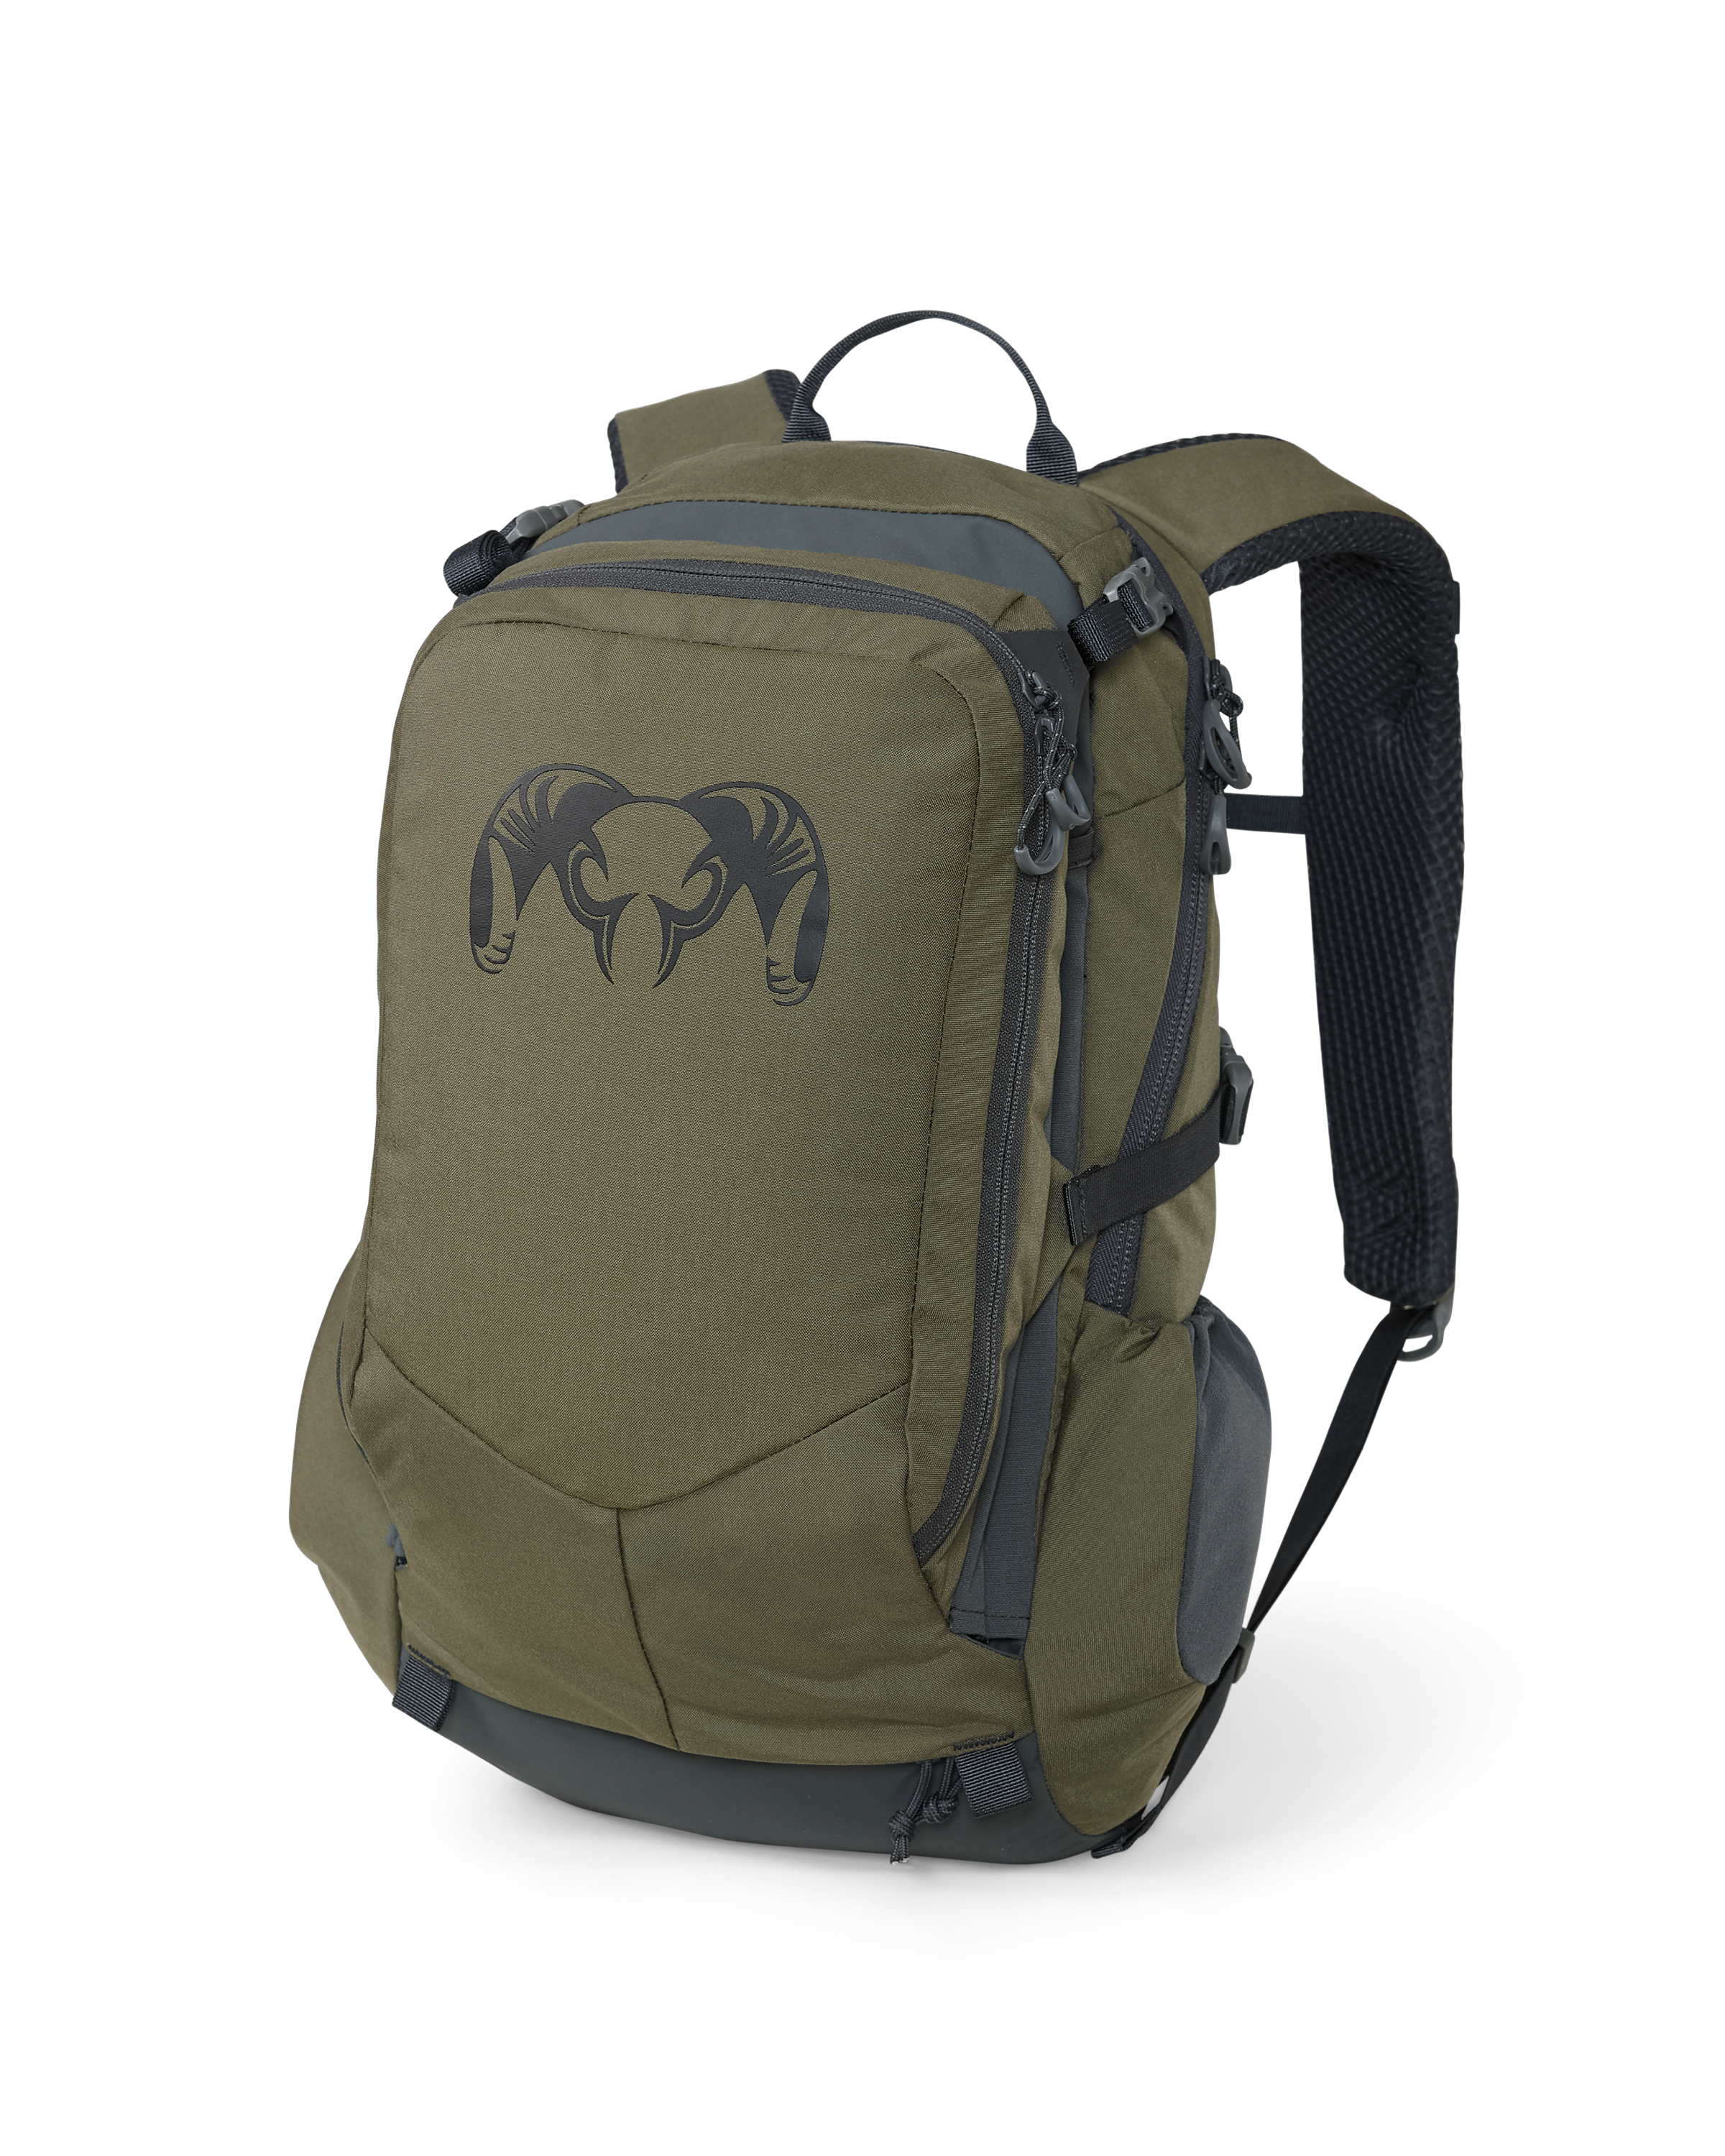 KUIU Divide 1200 Day Bag Pack in Ash Hunting Pack